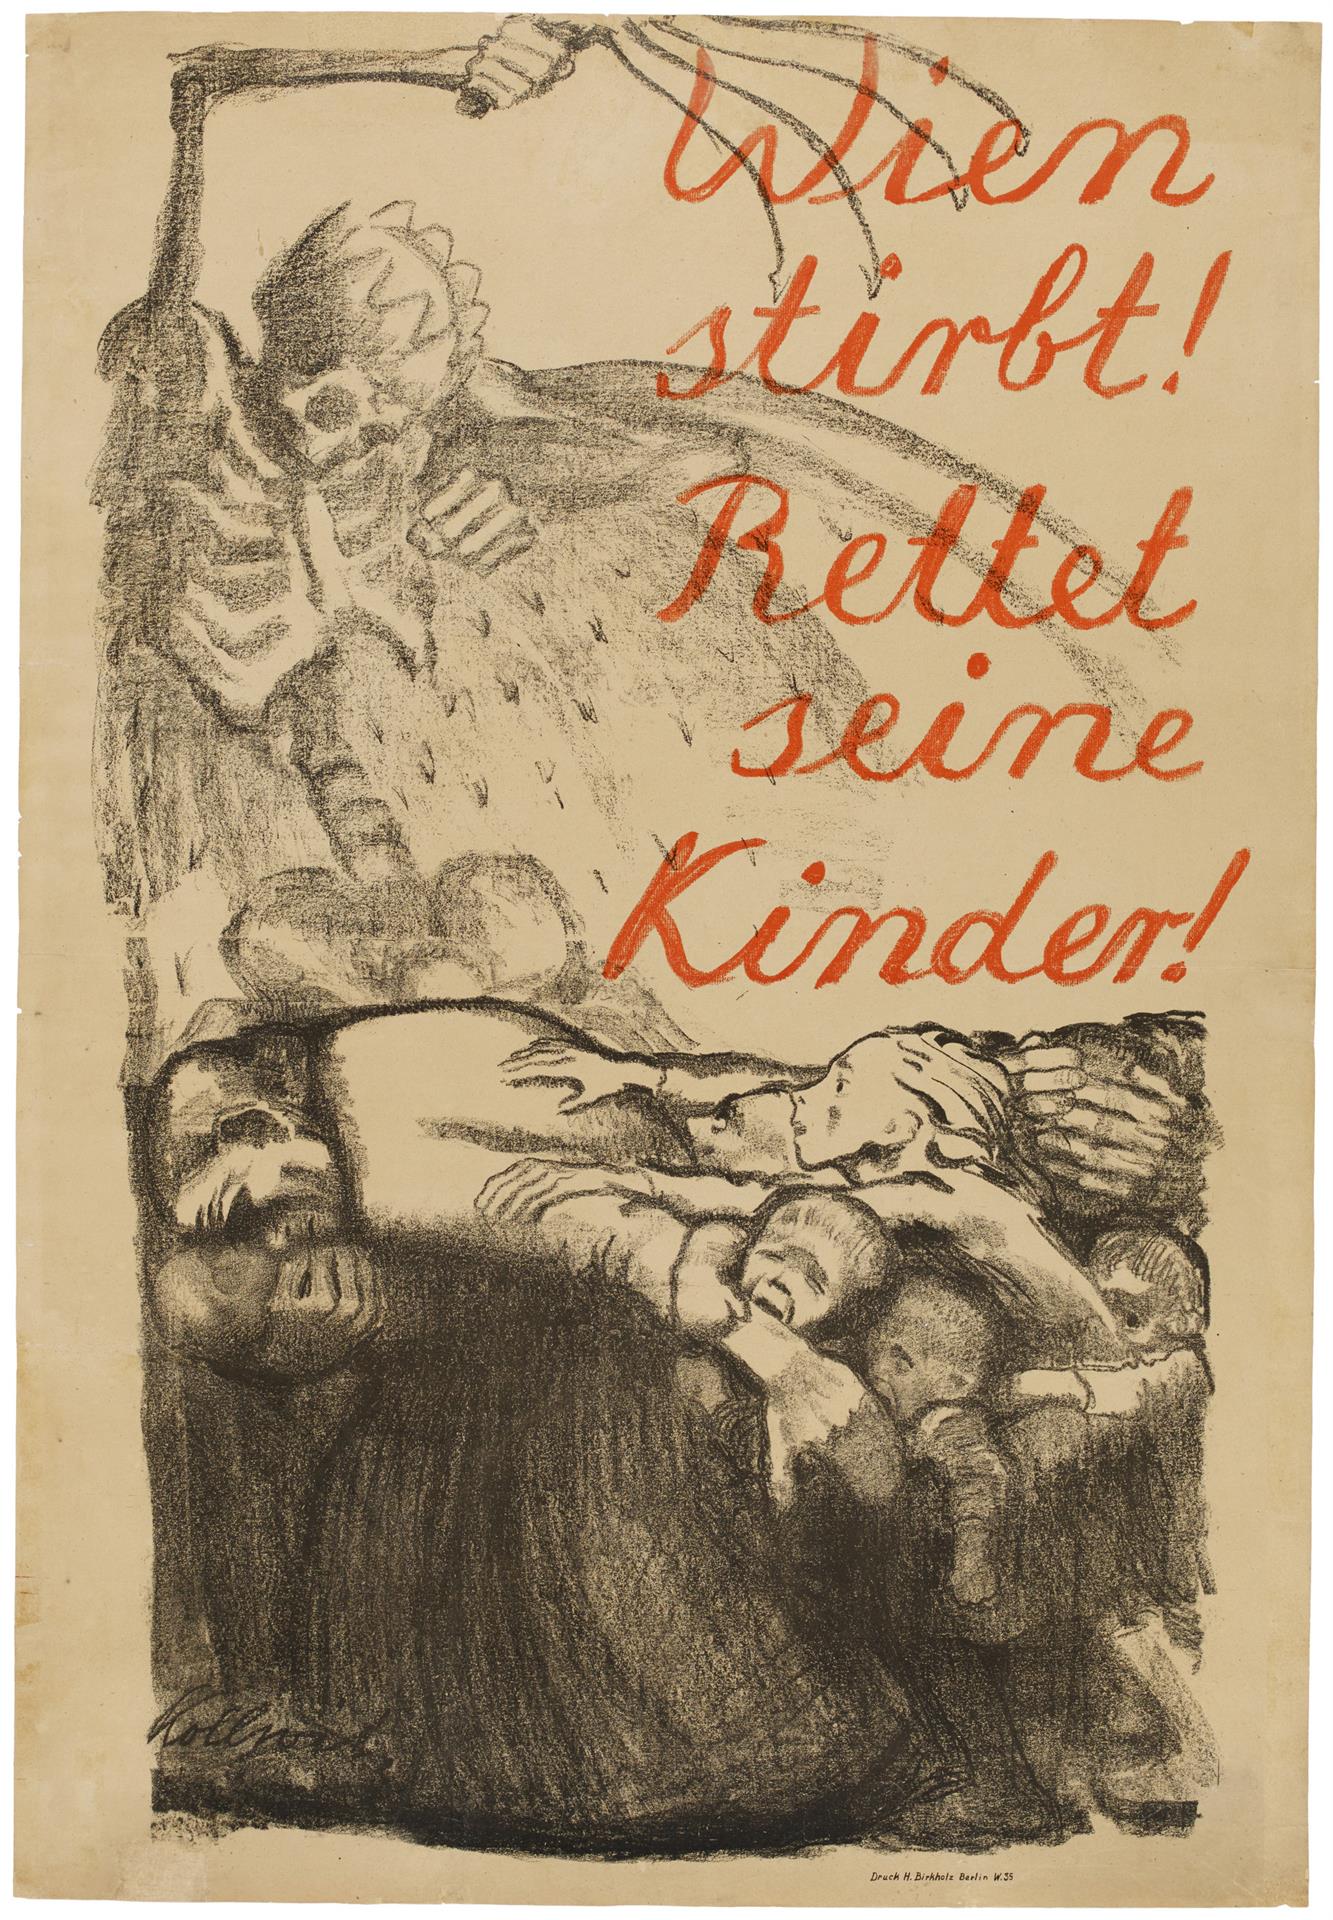 Käthe Kollwitz, Plakat »Wien stirbt! Rettet seine Kinder!«, 1920, Kreidelithographie in bis zu zwei Farben (Umdruck, bei der Schrift von geripptem Bütten), Kn 148 II